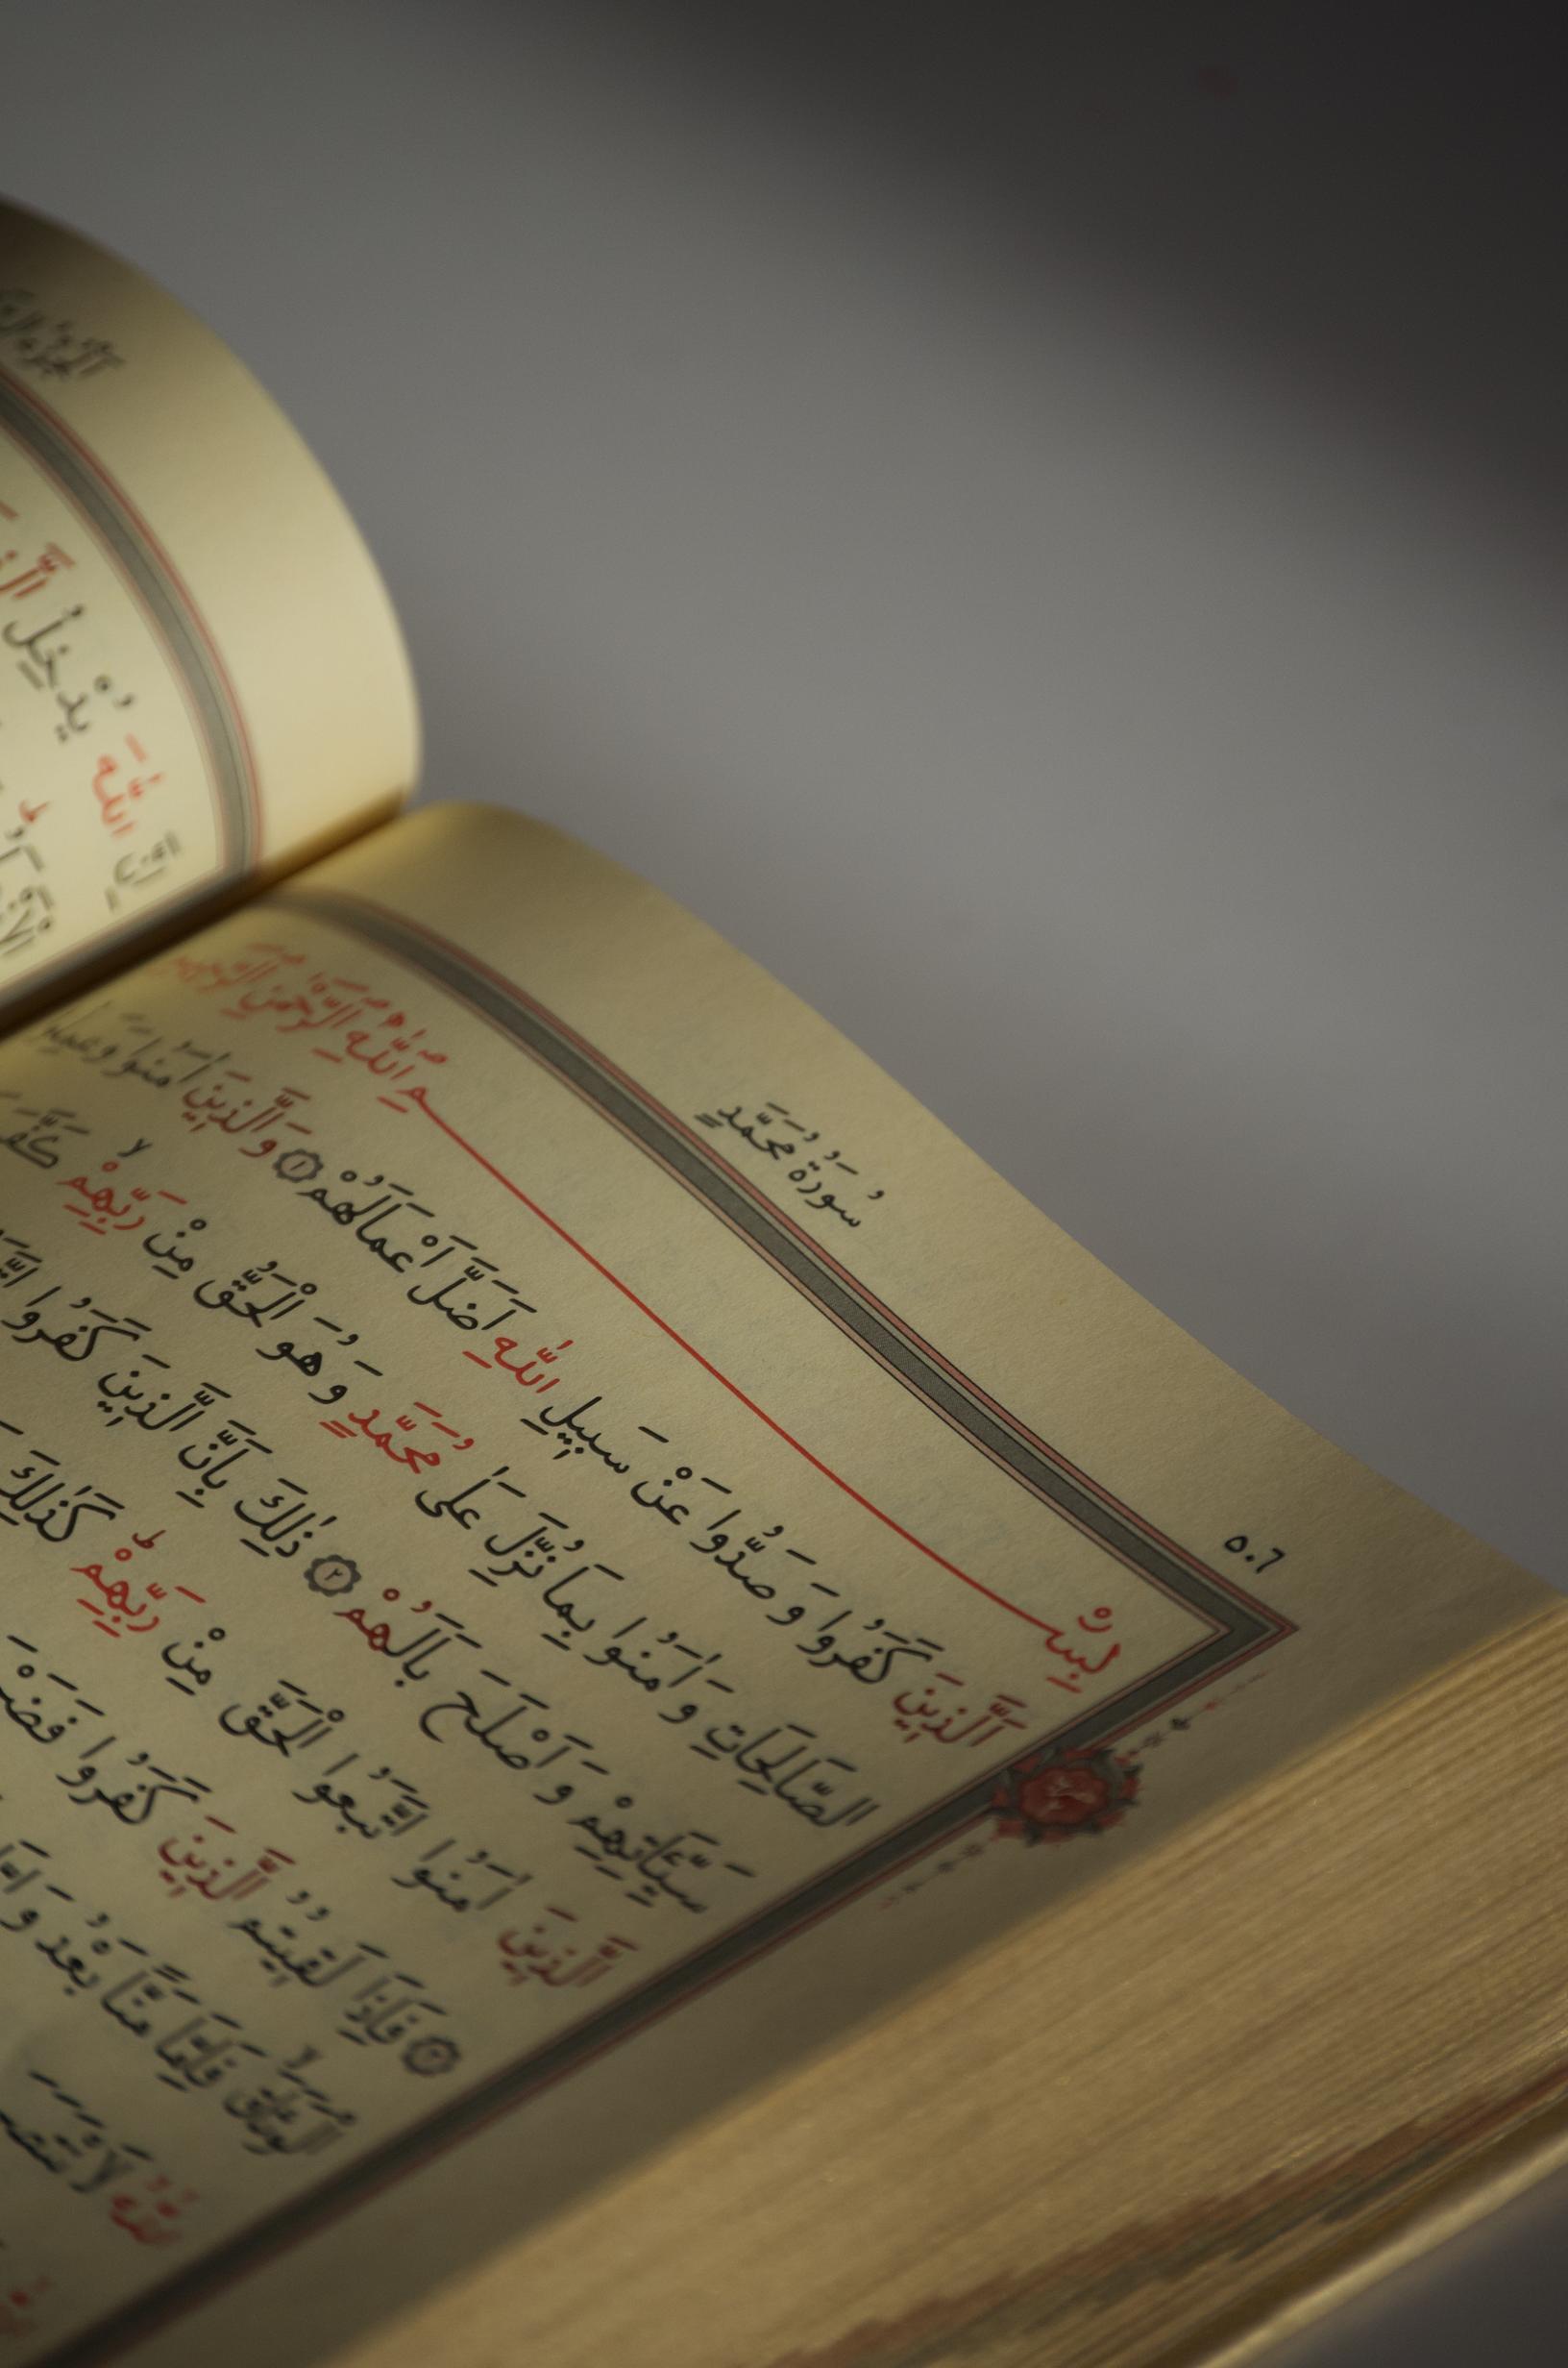 Porównanie koranu z innymi tekstami świętymi